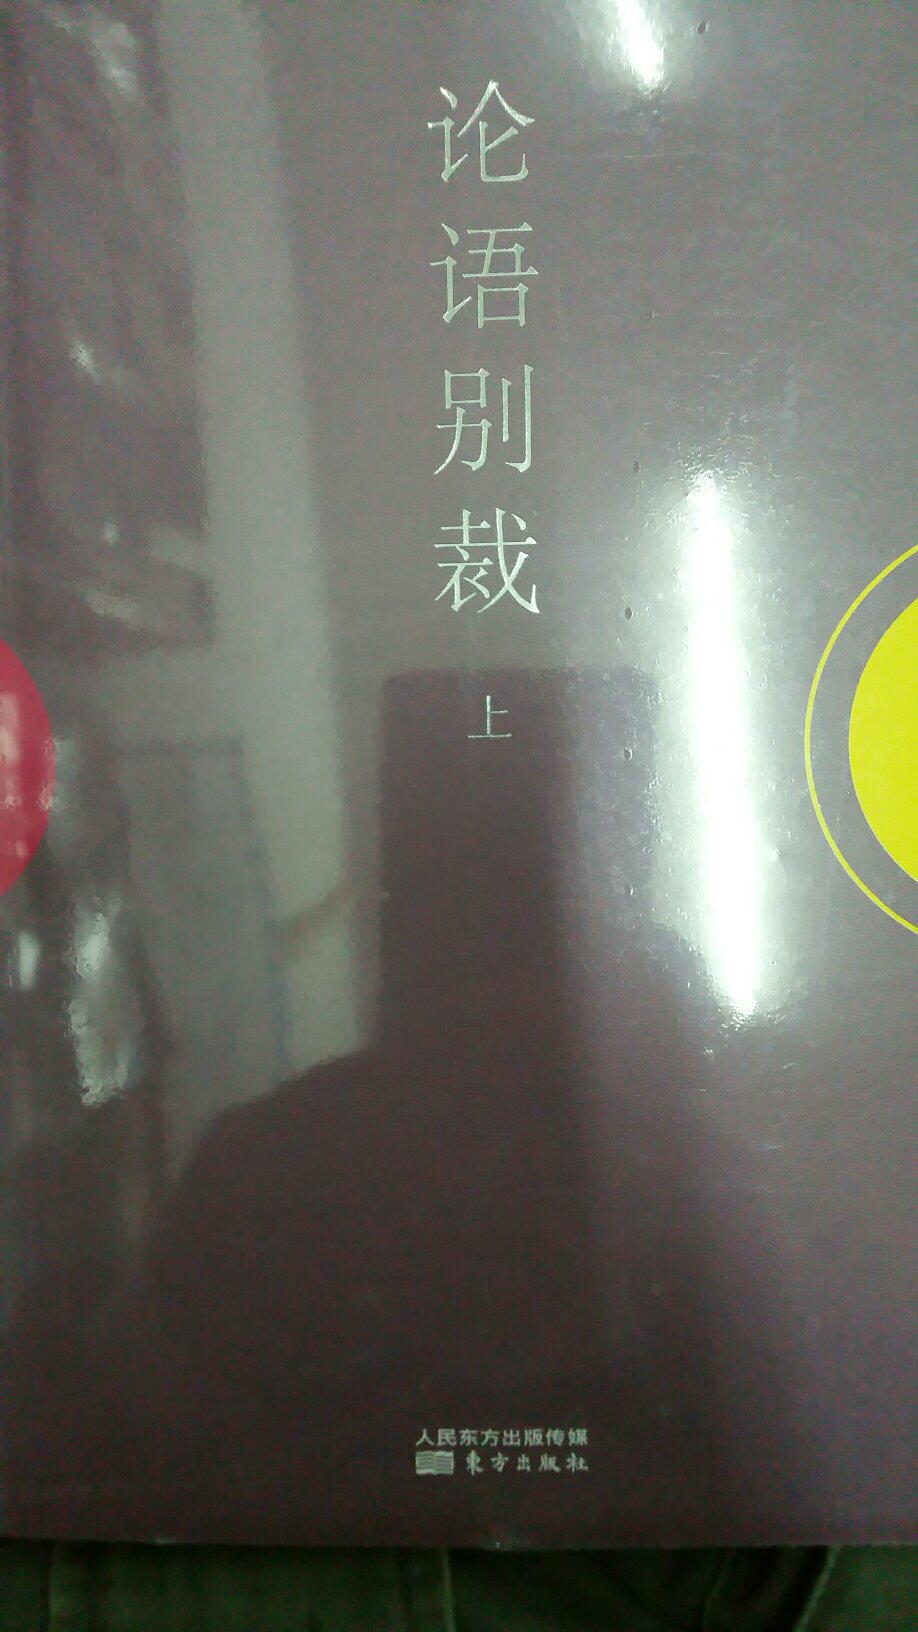 南怀瑾先生最出名的作品之一，虽是一家之言，但超过了绝大多数的通俗《论语》解读。